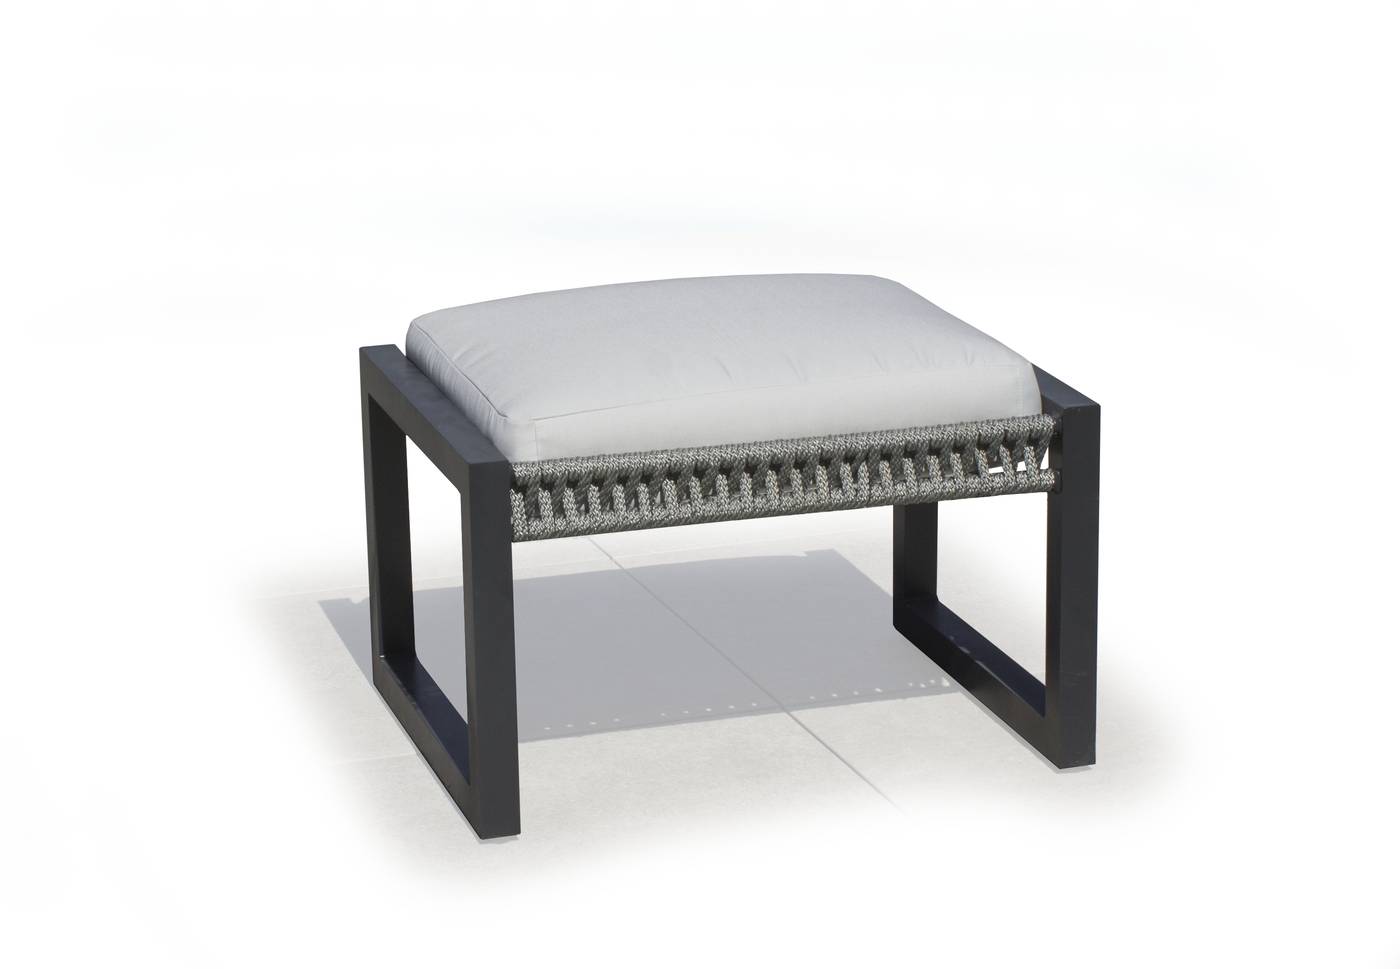 Set Aluminio Bolonia-870 - Conjunto aluminio y cuerda: 1 sofá de 2 plazas + 2 sillones + 1 mesa de centro + cojines. Respaldos reclinables. Colores: blanco, gris, marrón o champagne.